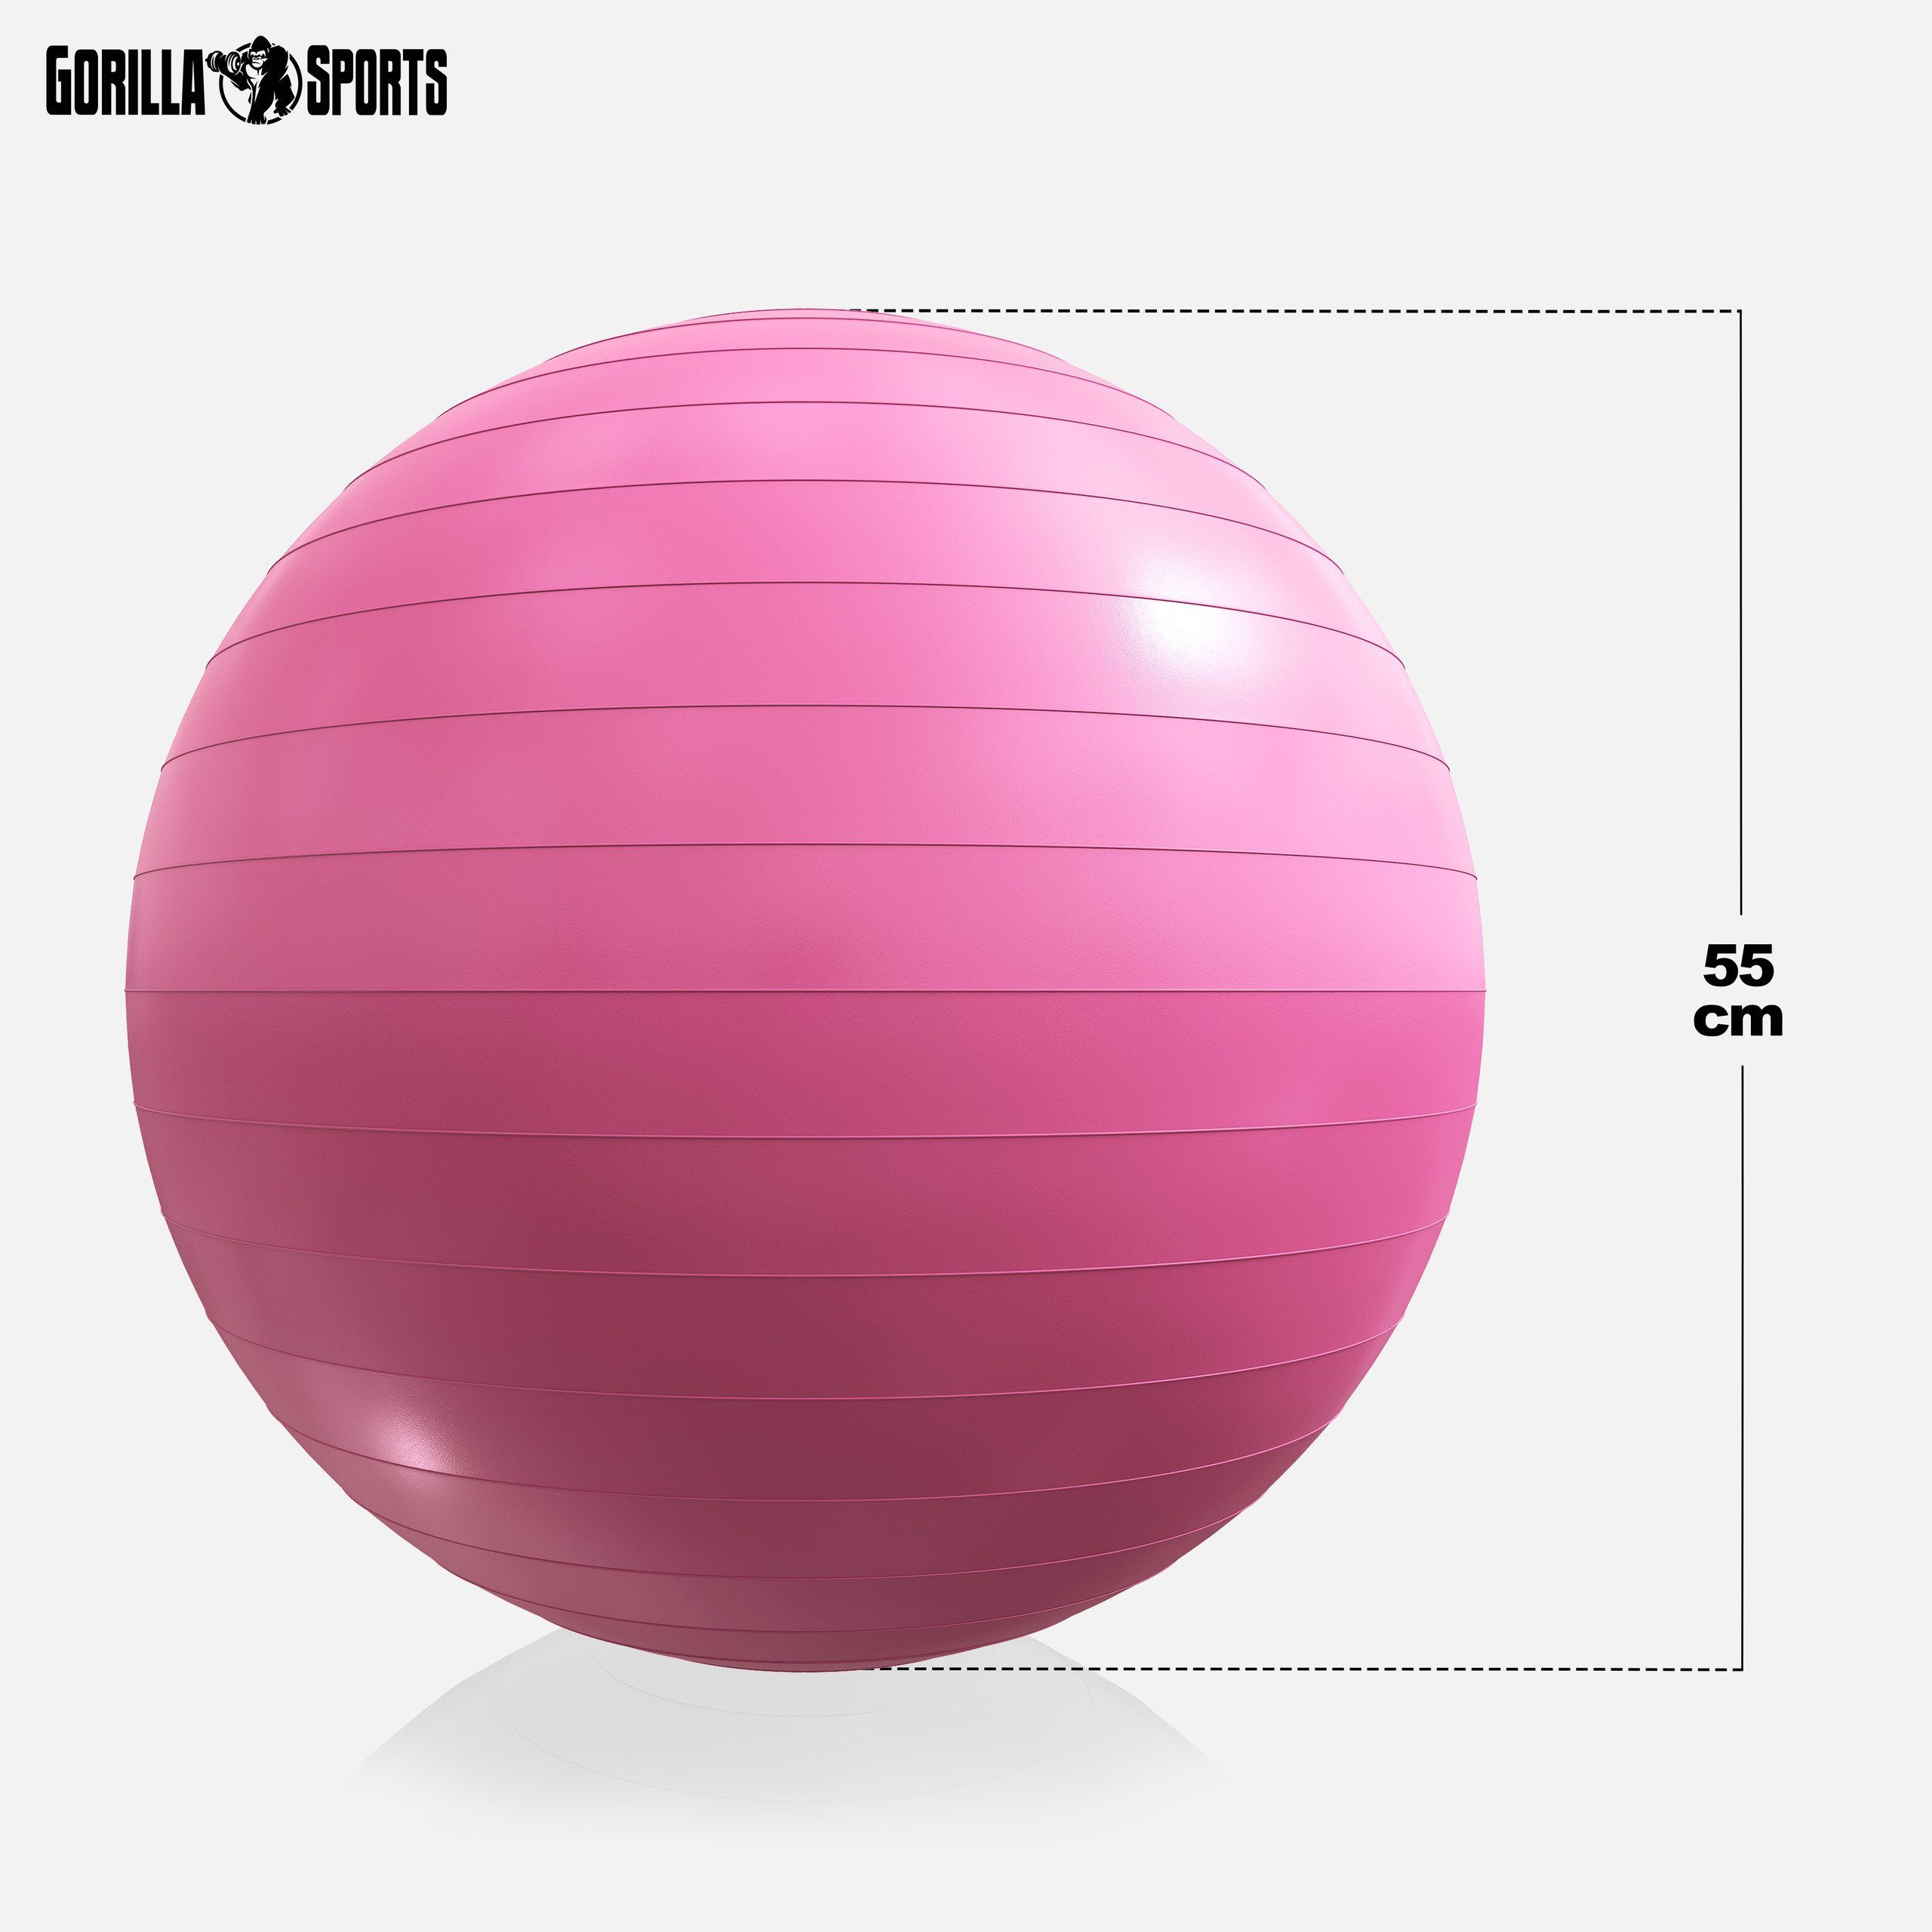 -Fitnessball GORILLA Anti-Burst, 55cm/65cm/75cm, 500kg Gymnastikball Farbwahl Pink Belastbar, SPORTS bis